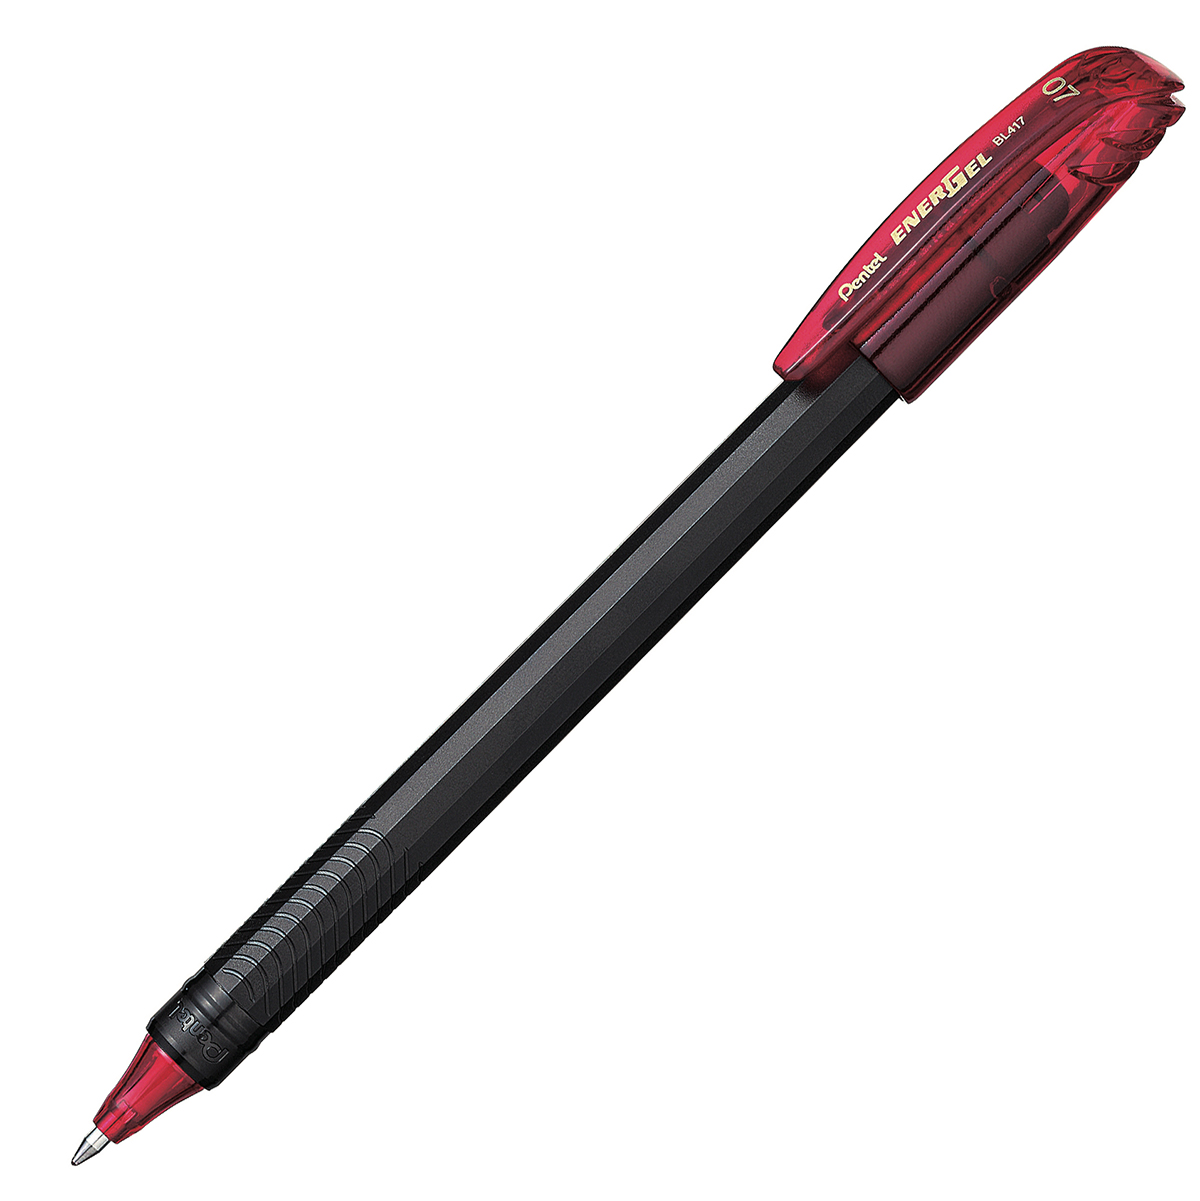 Bolígrafo Pentel energel stick punto 0.7 Bolígrafo Pentel energel tinta gel color rojo, 0.7 mm secado rápido, peso ligero con 12 lados, hecho de 62% material reciclado. la tapa indica el color de la tinta                                                                                             mm (mediano) tinta rojo, 1 pieza         - PENTEL